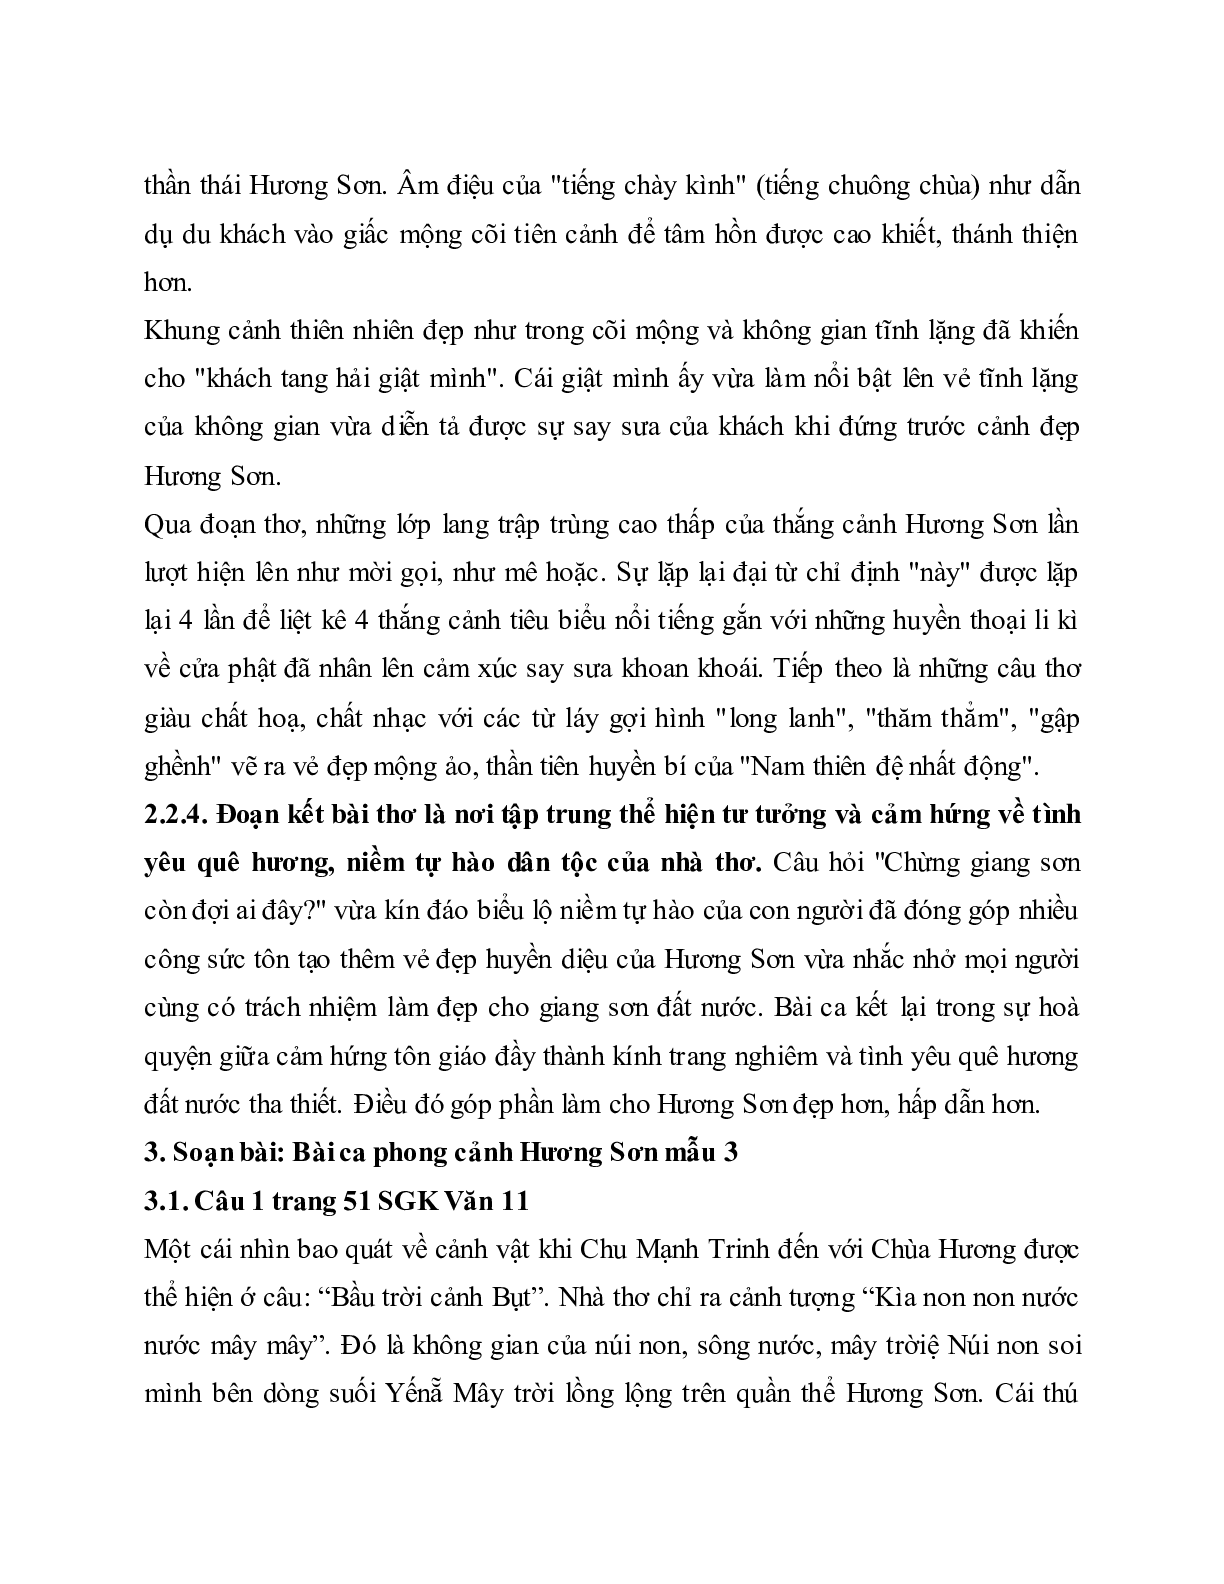 Soạn bài Bài ca phong cảnh Hương Sơn - ngắn nhất Soạn văn 11 (trang 4)